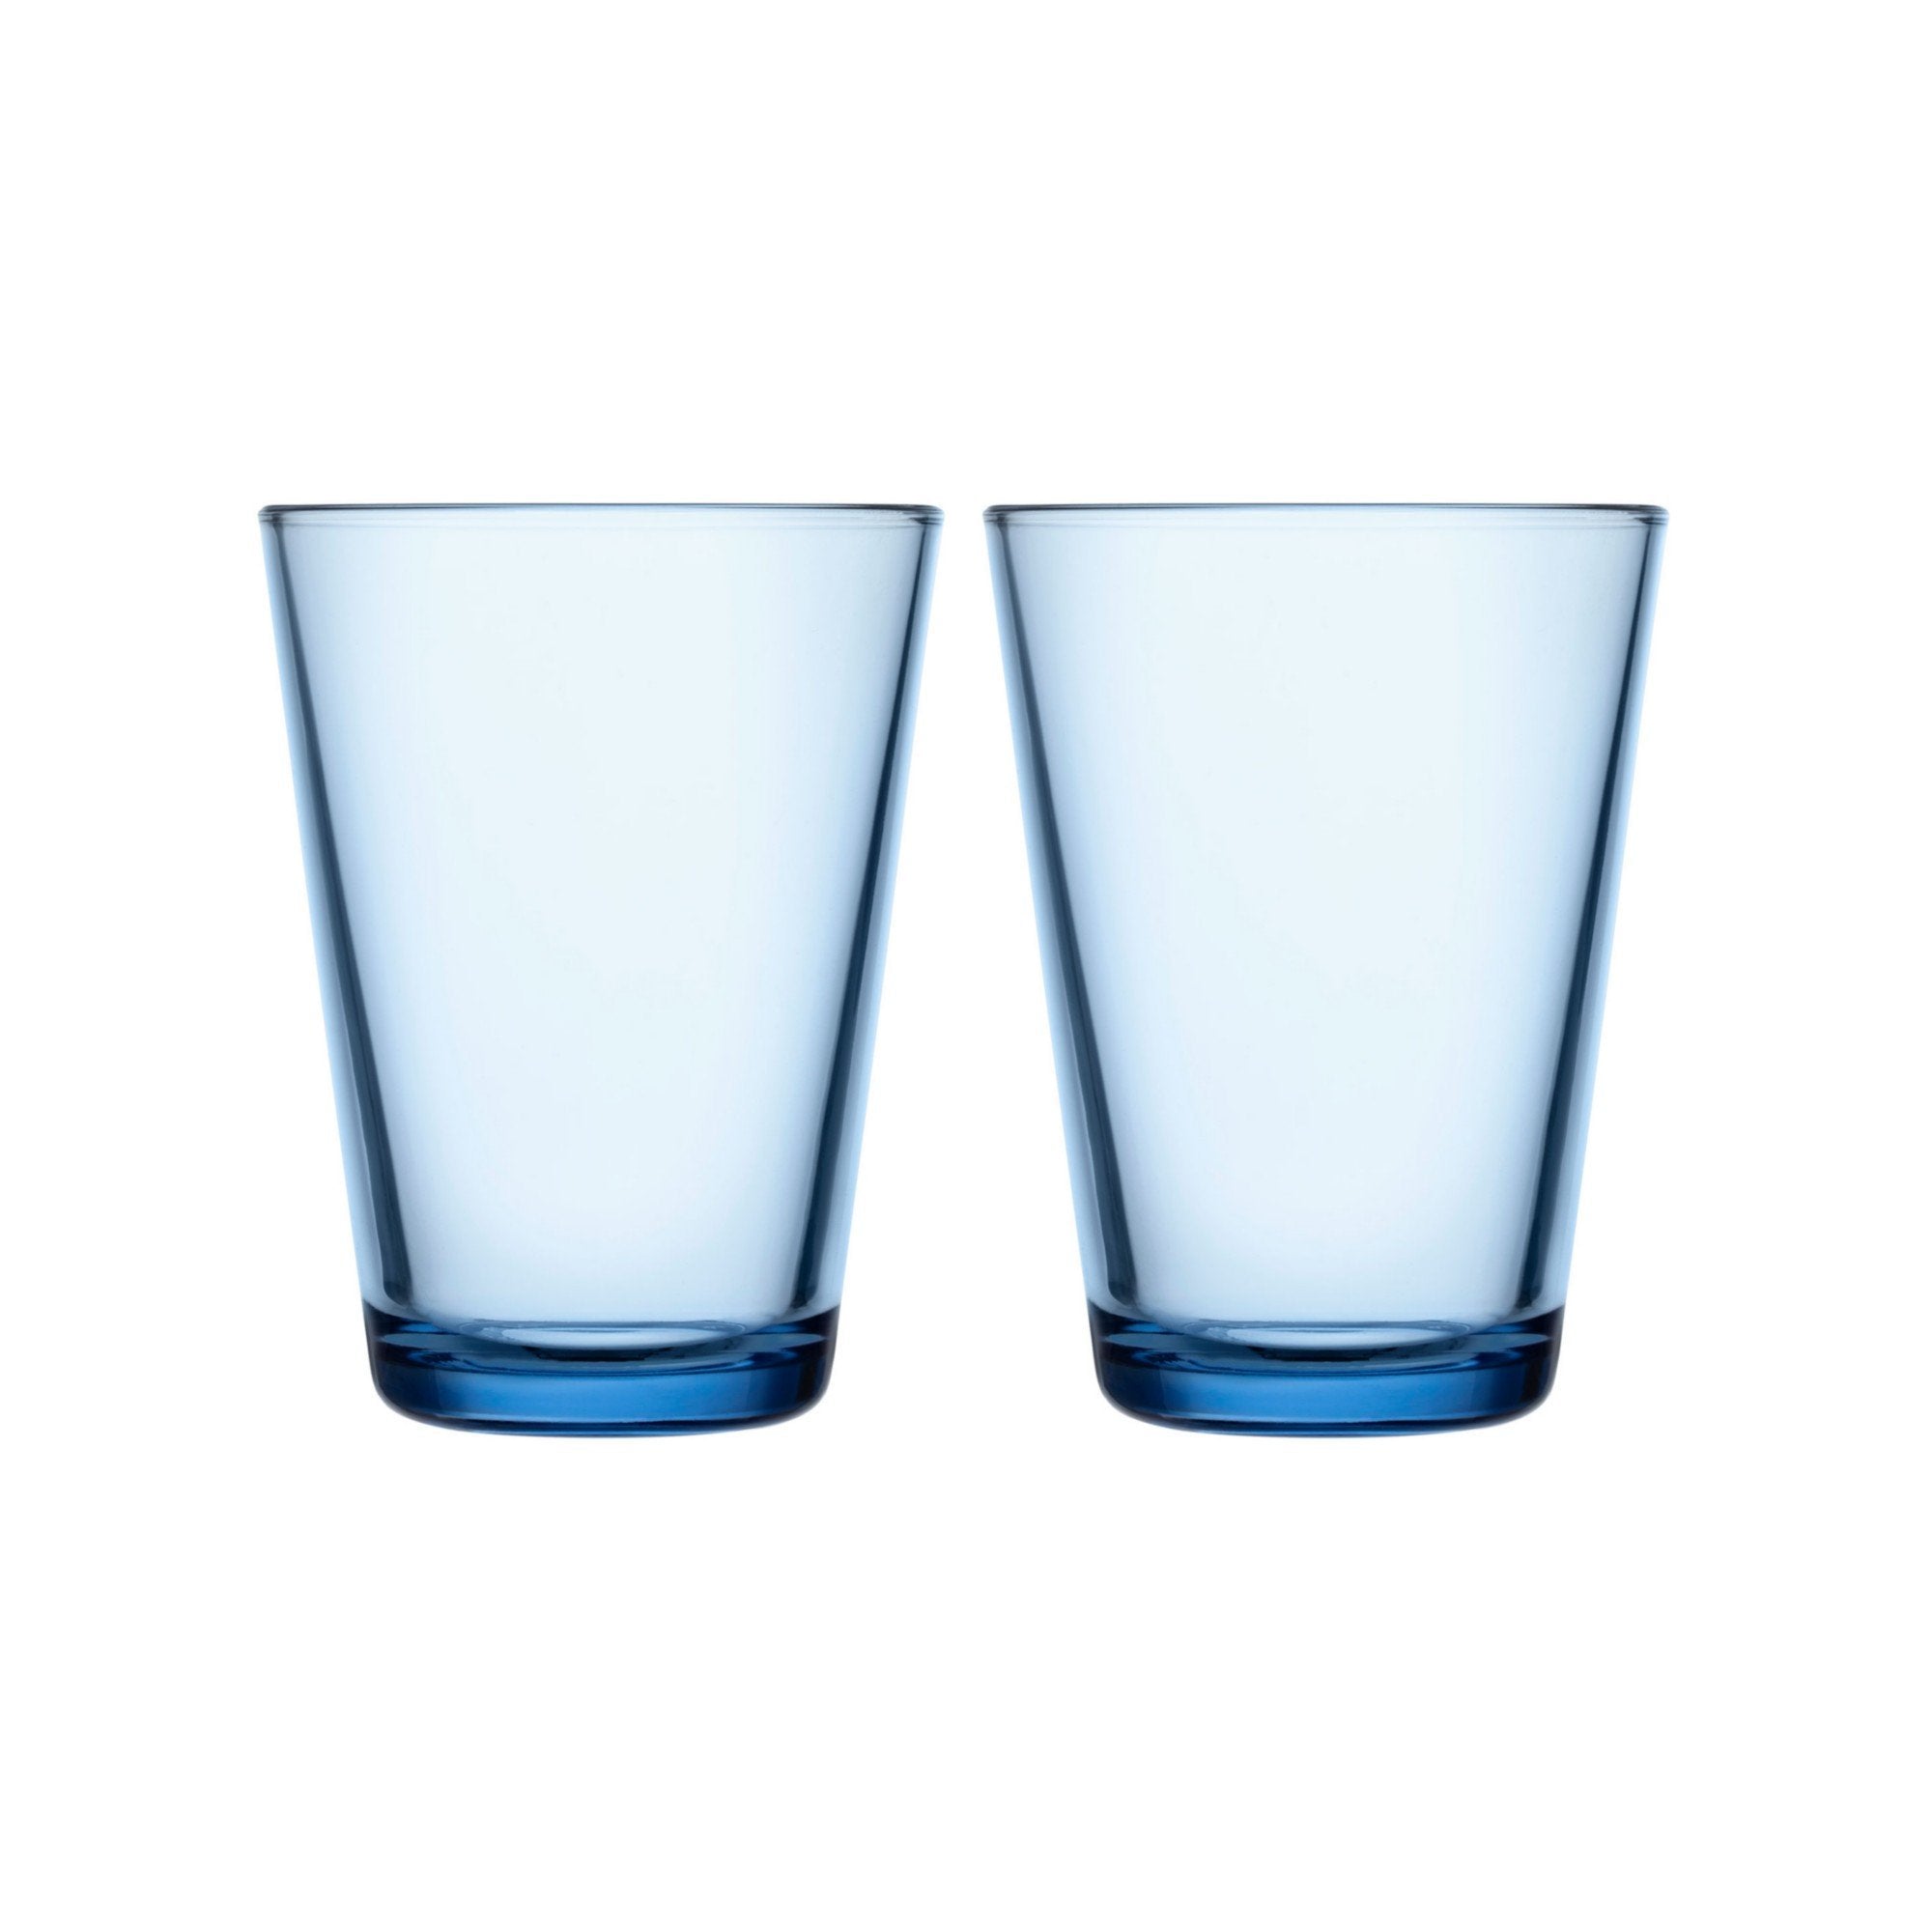 Iittala Katio Drinking Glass Aqua 40cl, 2 st.